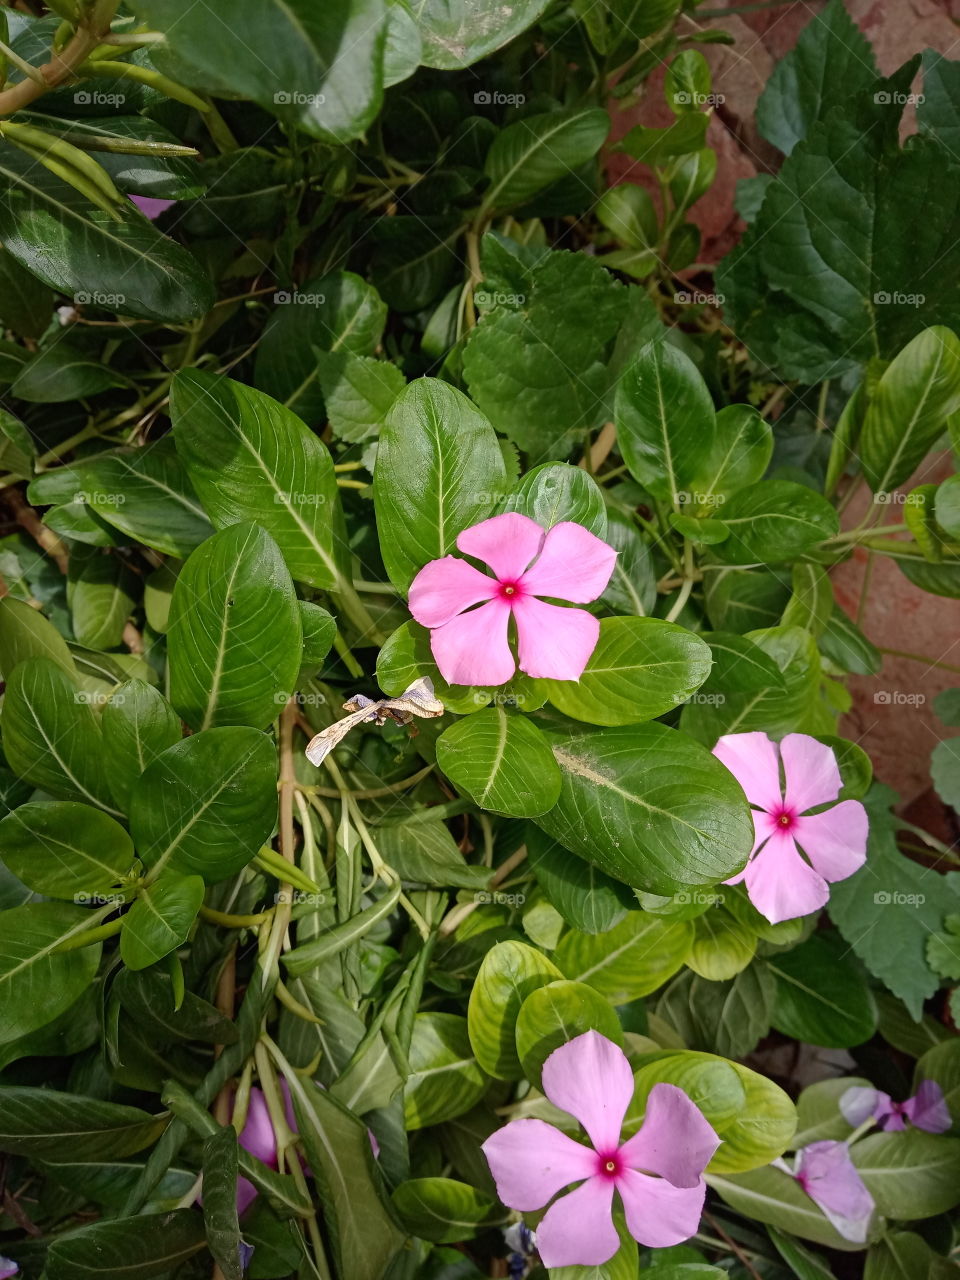 simple flowers